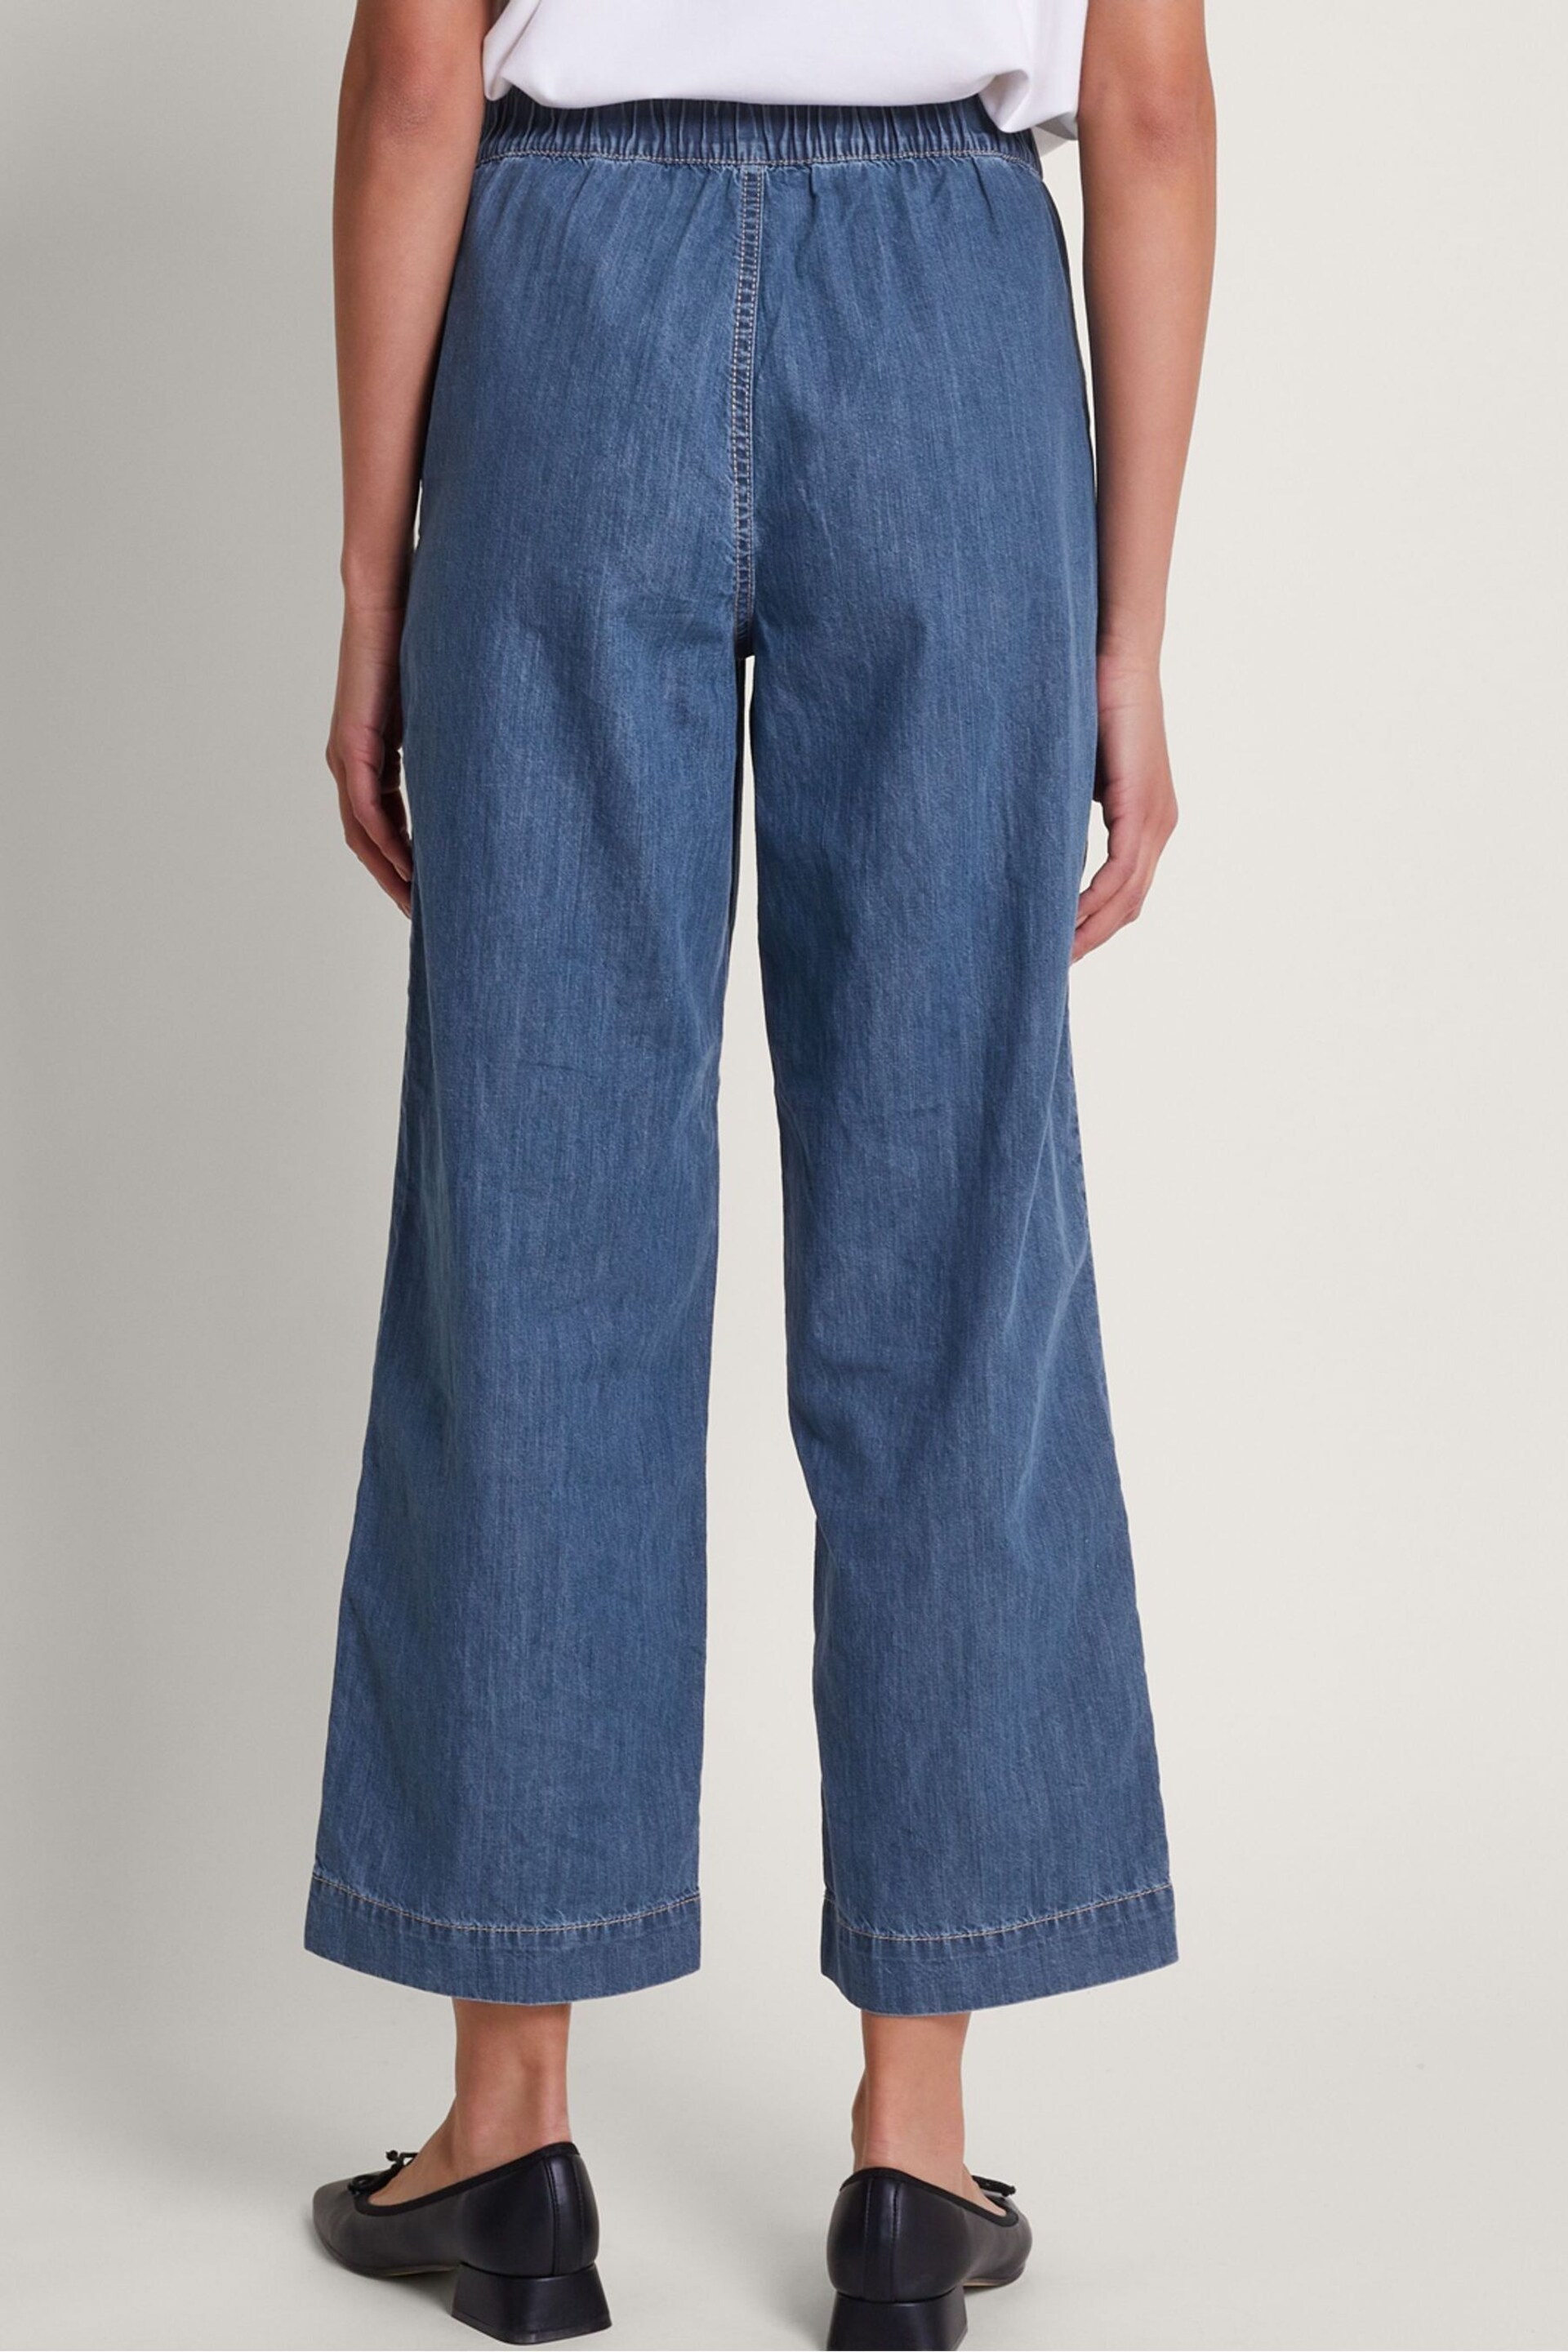 Monsoon Blue Harper Regular Length Crop Jeans - Image 2 of 5